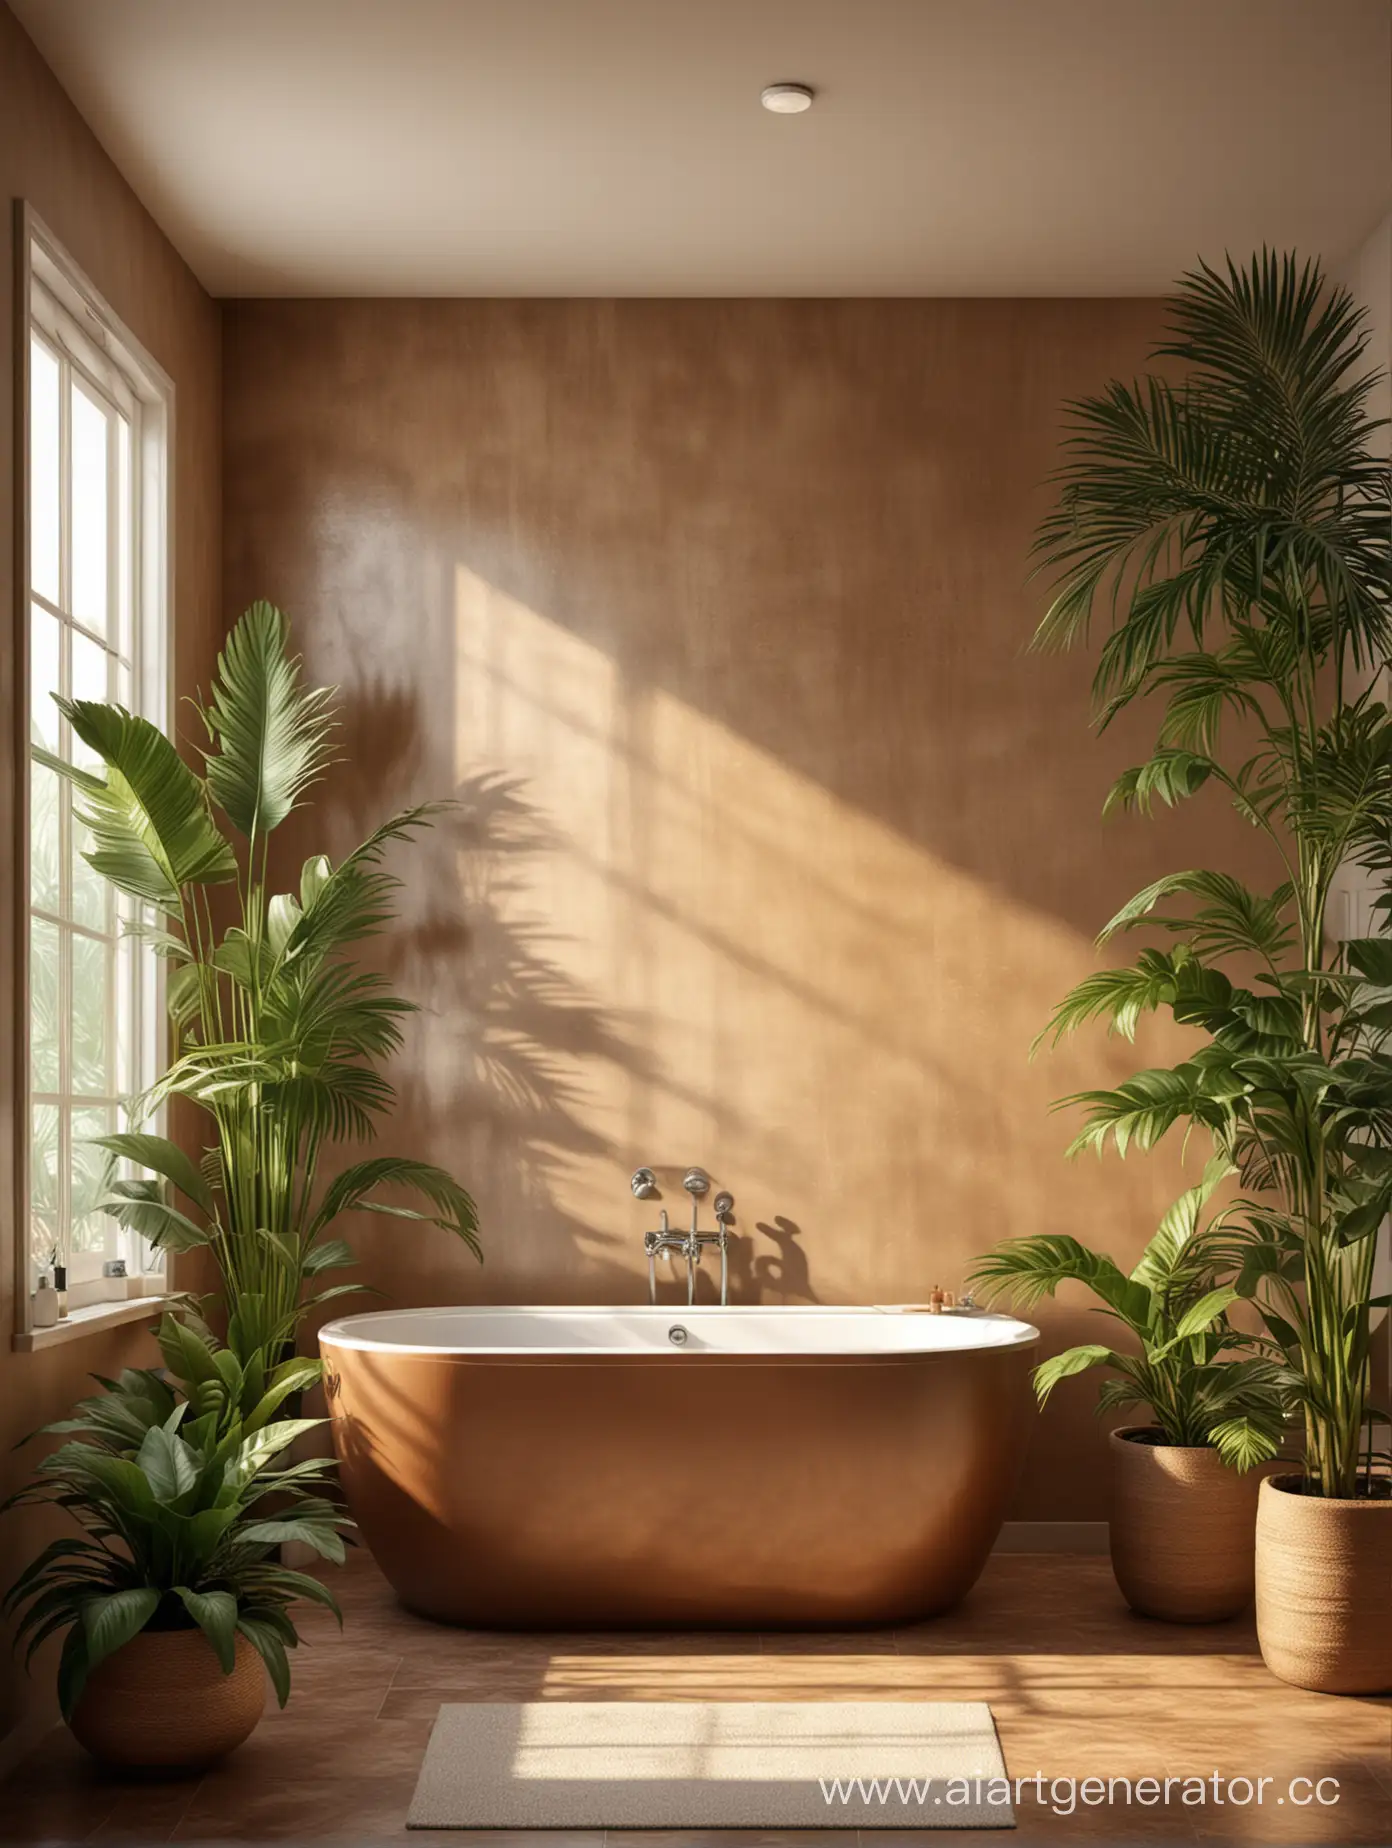 фон для товара, ванная комната коричневая, тропические растения, максимально реалистично, солнечные лучи, затмененный фон